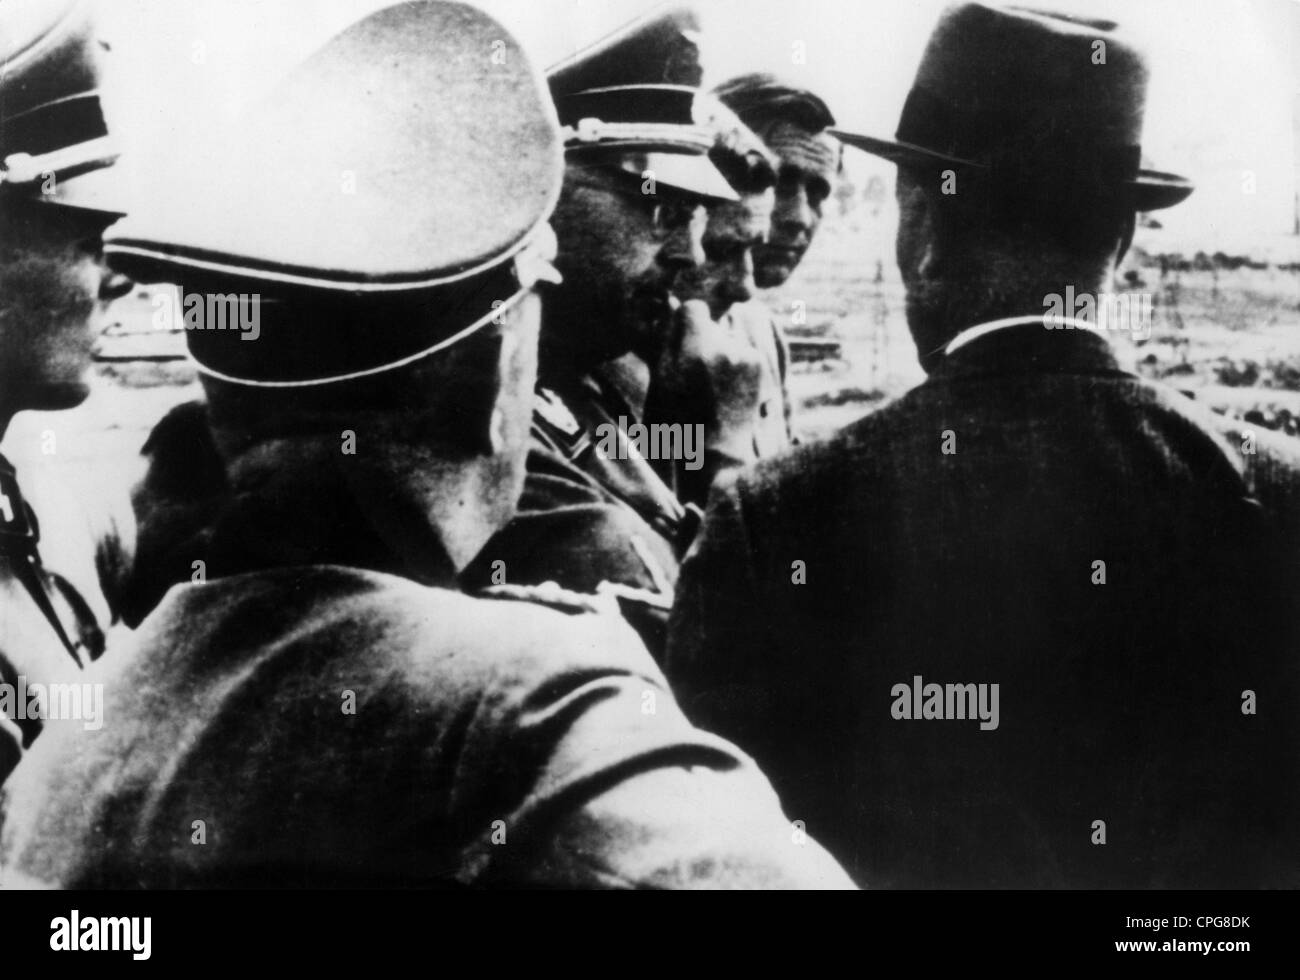 Himmler, Heinrich, 7.10.1900 - 23.5.1945, politicien allemand (NSDAP), Reichsführer-SS, visite au camp de concentration Auschwitz - Birkenau, 1942, à droite : Max Faust de IG Farben, Banque D'Images